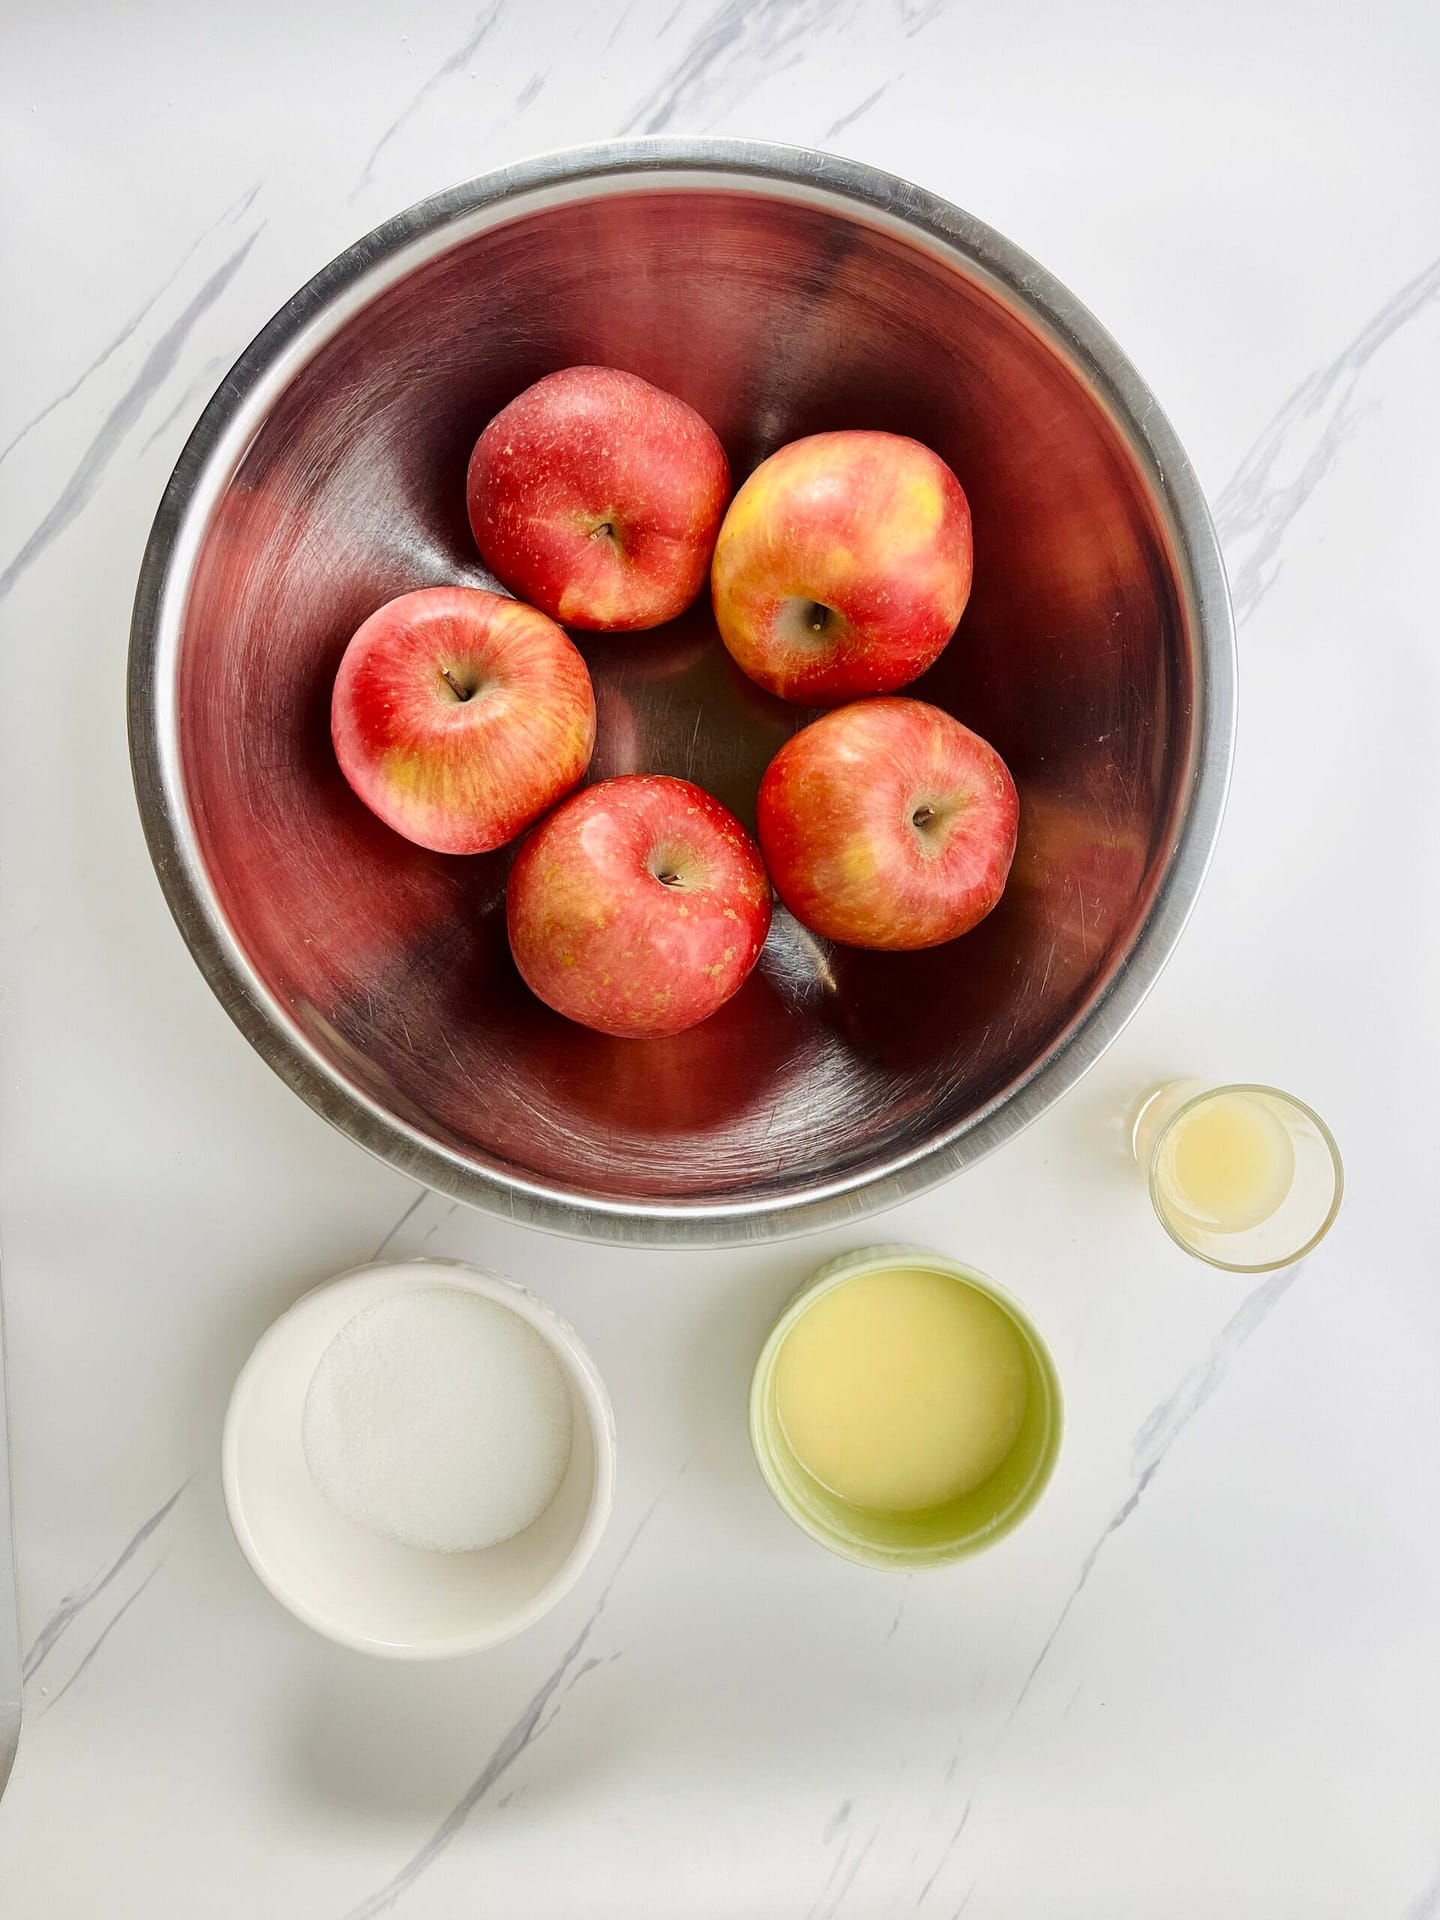 apple rose tart – apple rose ingredients